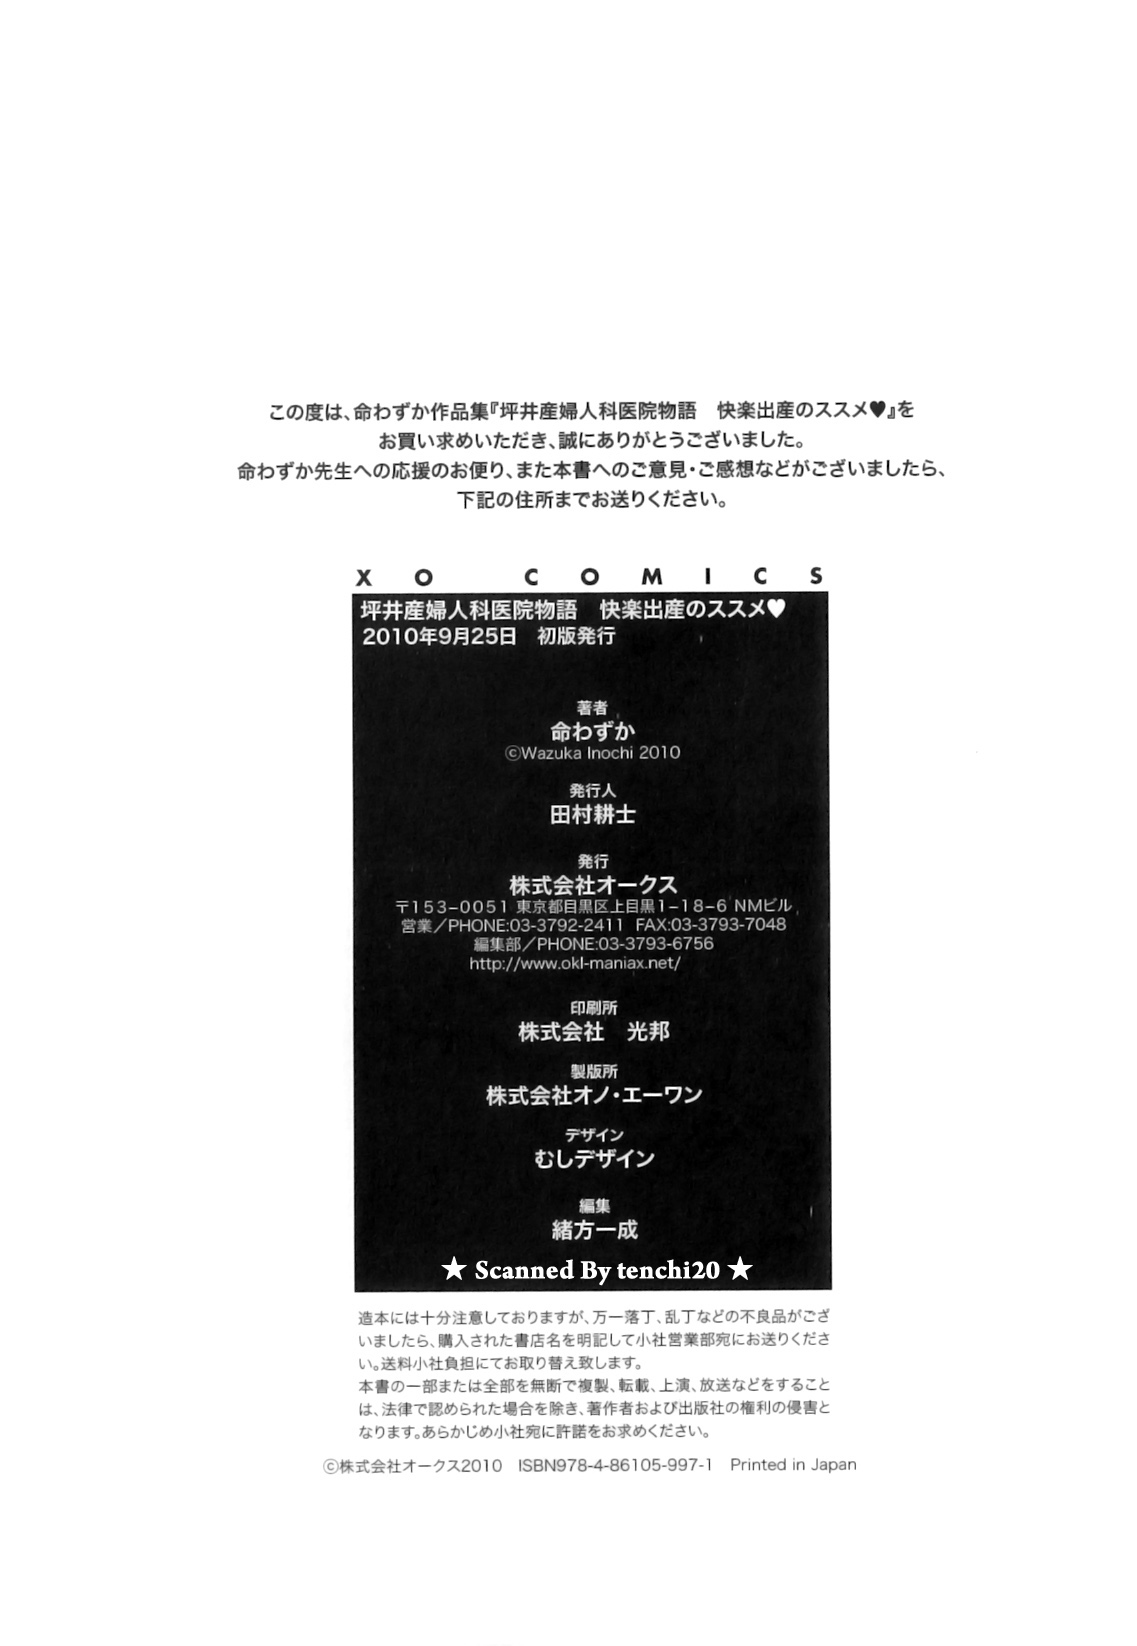 Inochi Wazuka - Tsuboi Sanfujinka Iin Monogatari - Kairaku Shussan no Susume [2010-09-25] 命わずか - 坪井産婦人科医院物語 - 快楽出産のススメ [2010-09-25]